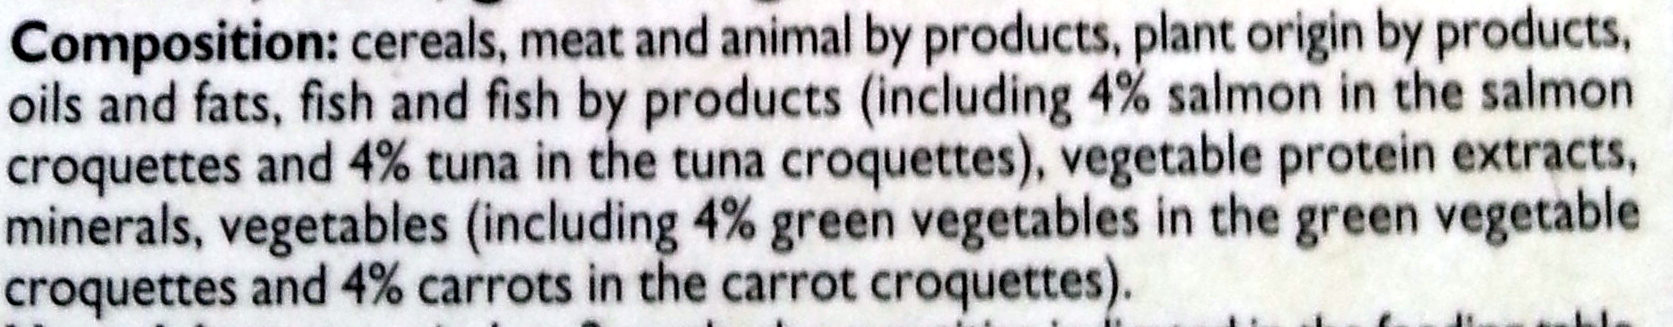 Croquettes aux légumes verts et aux carottes au saumon & au thon - Ingredients - en